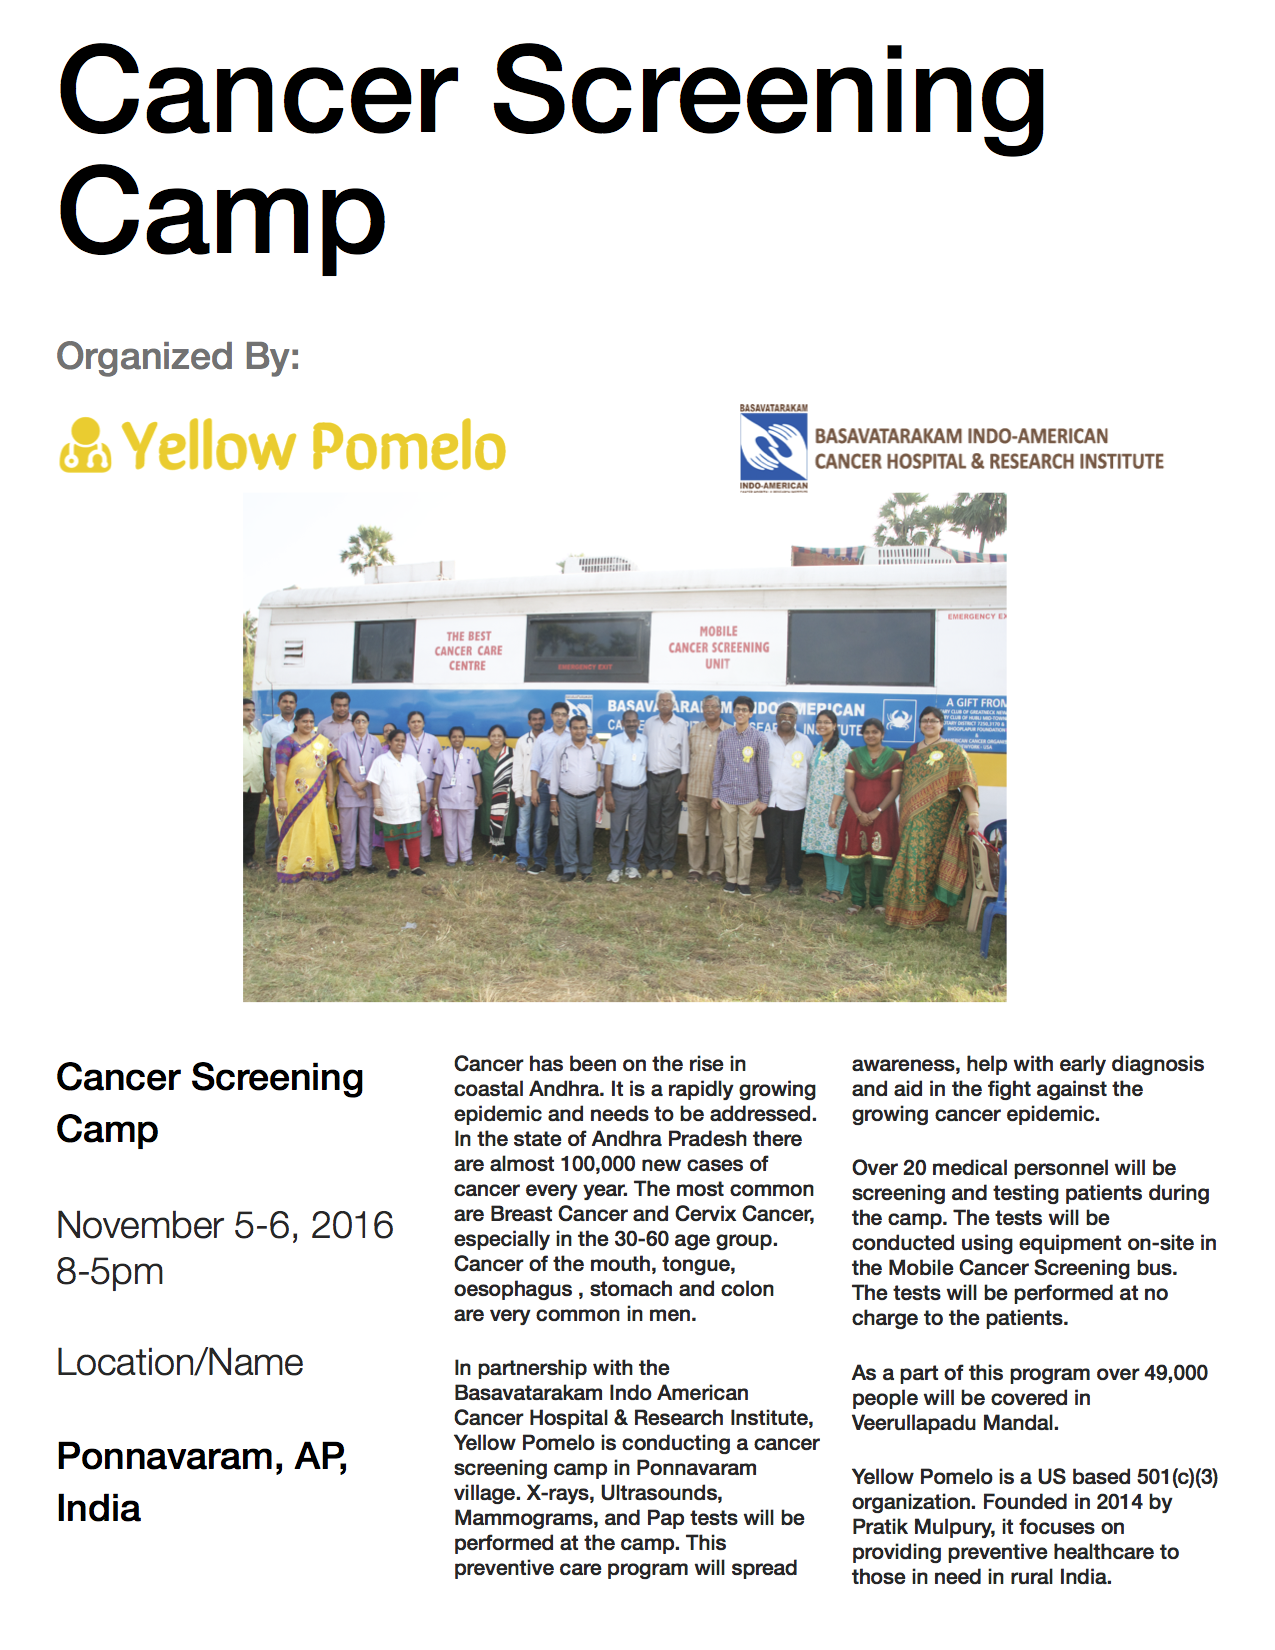 Ponnavaram Cancer Screening Camp Announcement